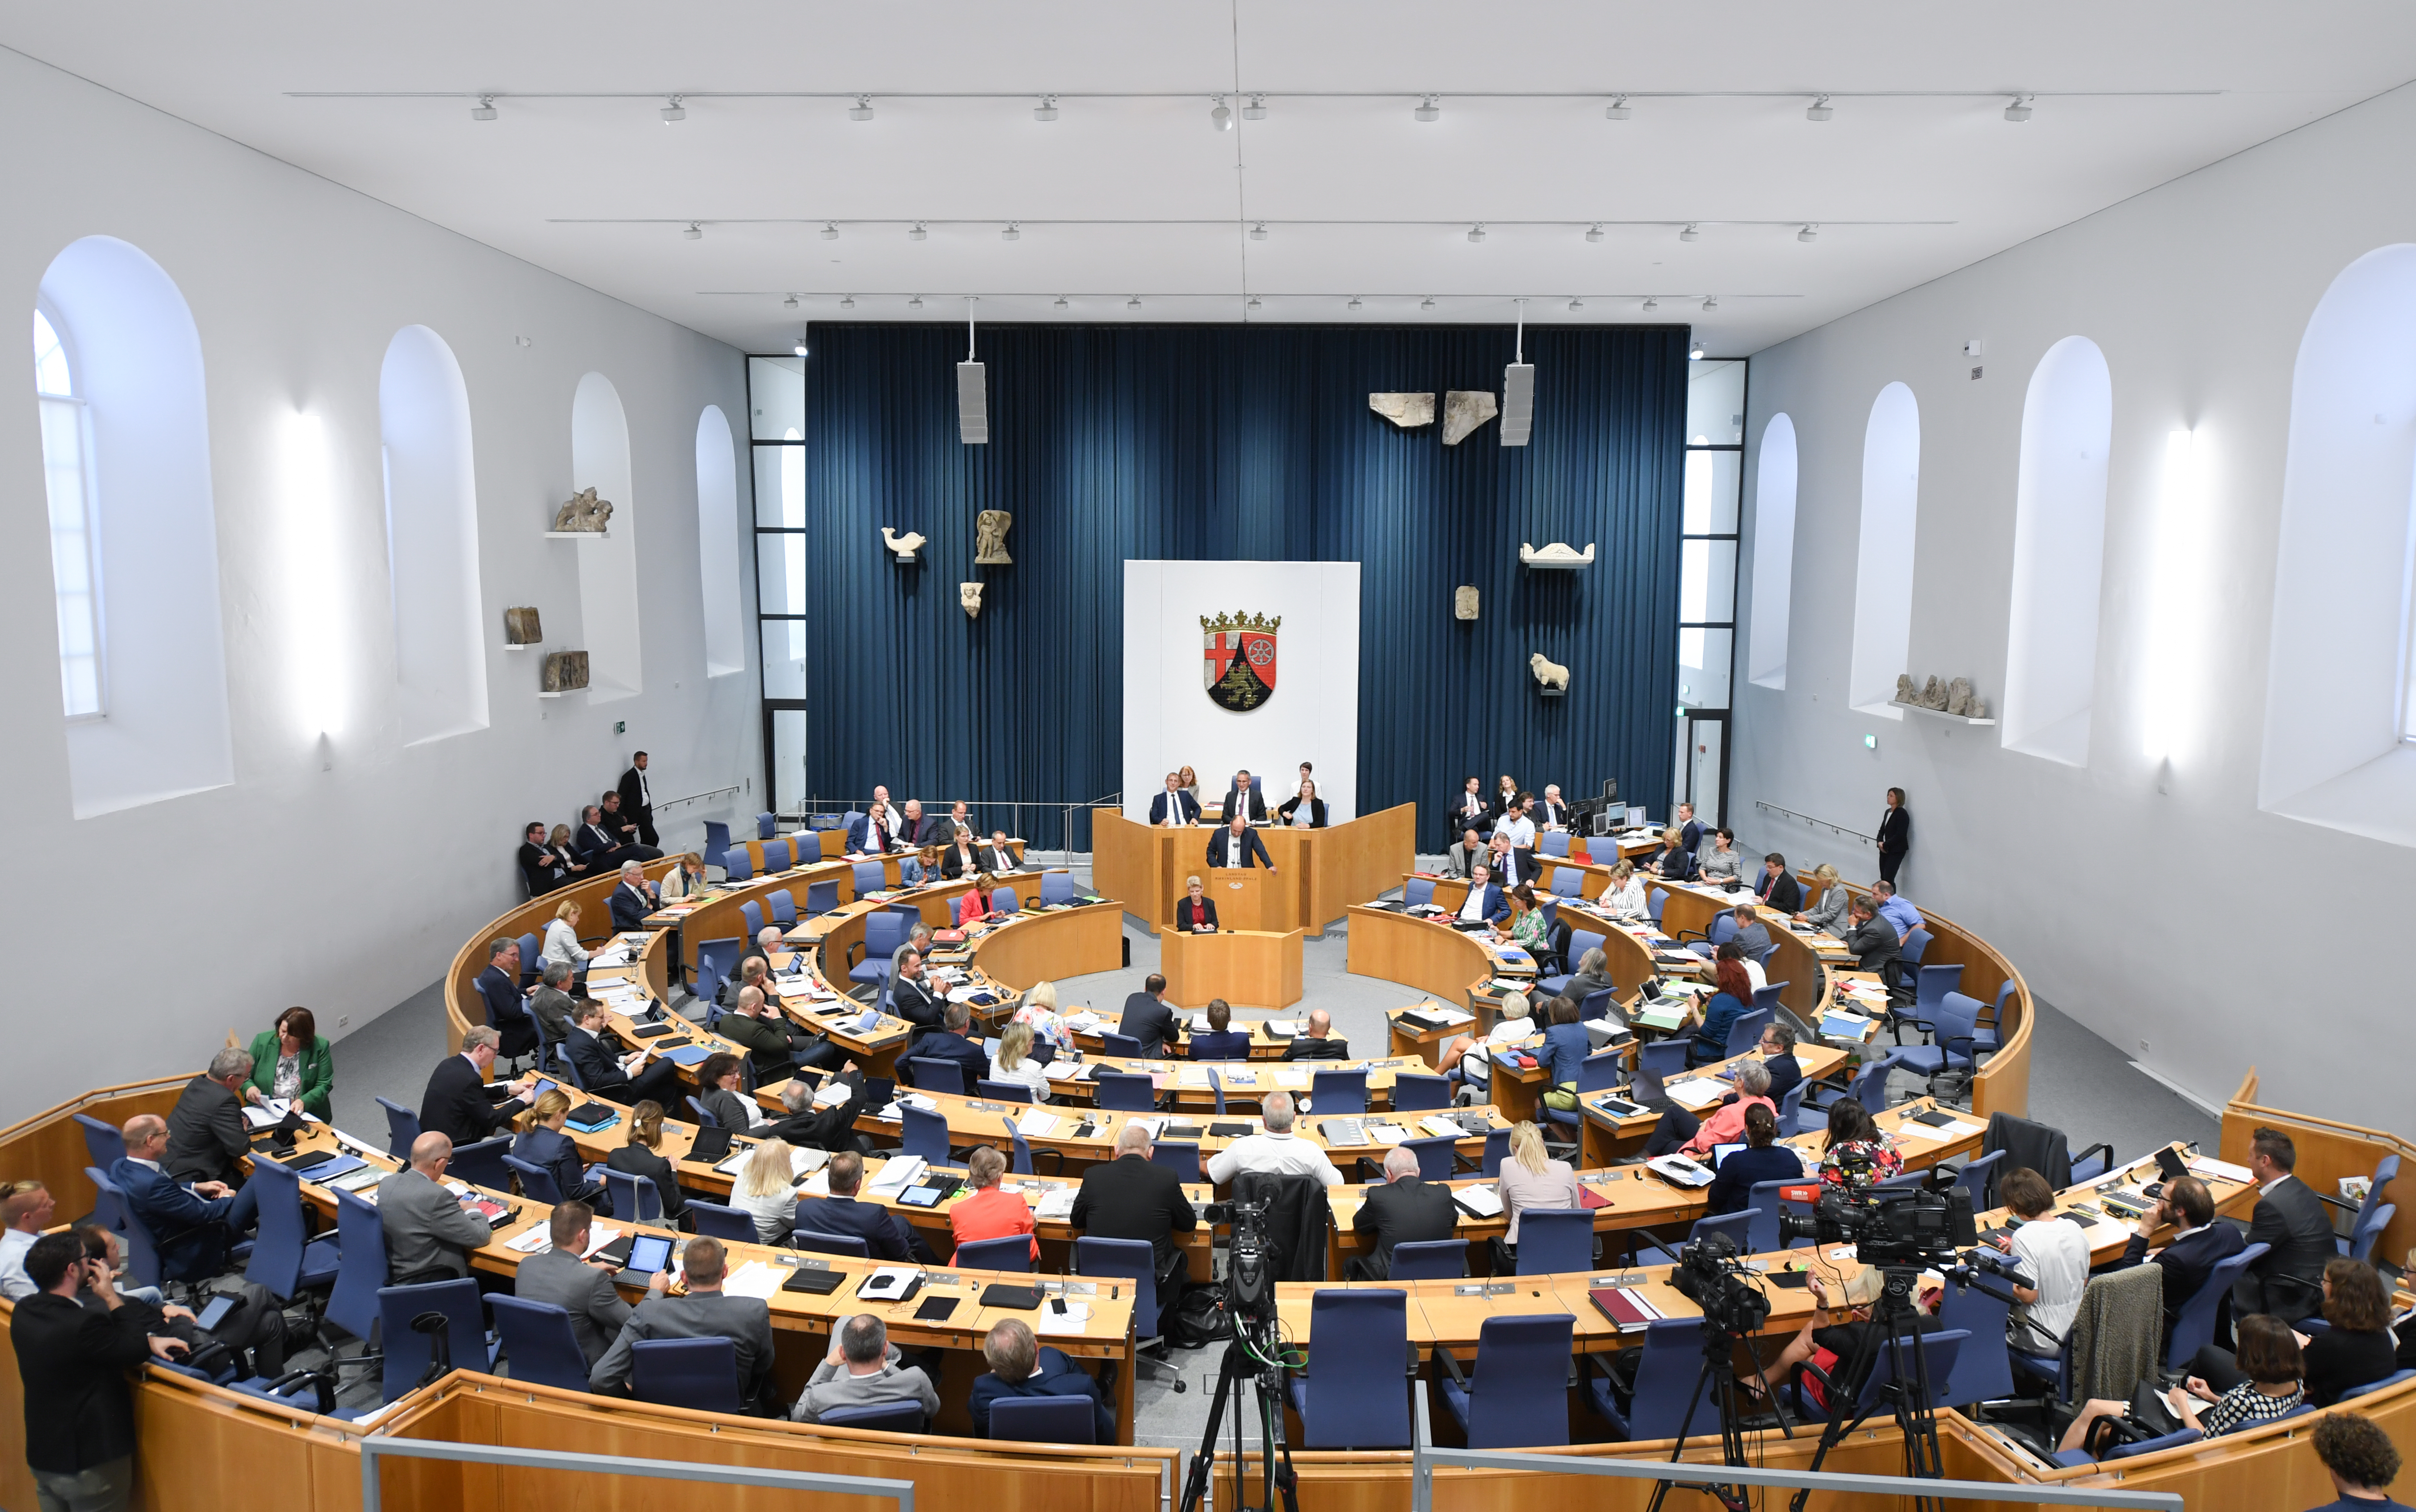 Sitzung des Landtags von Rheinland-Pfalz in den Ausweichräumlichkeigen während des Landtagsumbaus | picture alliance/dpa